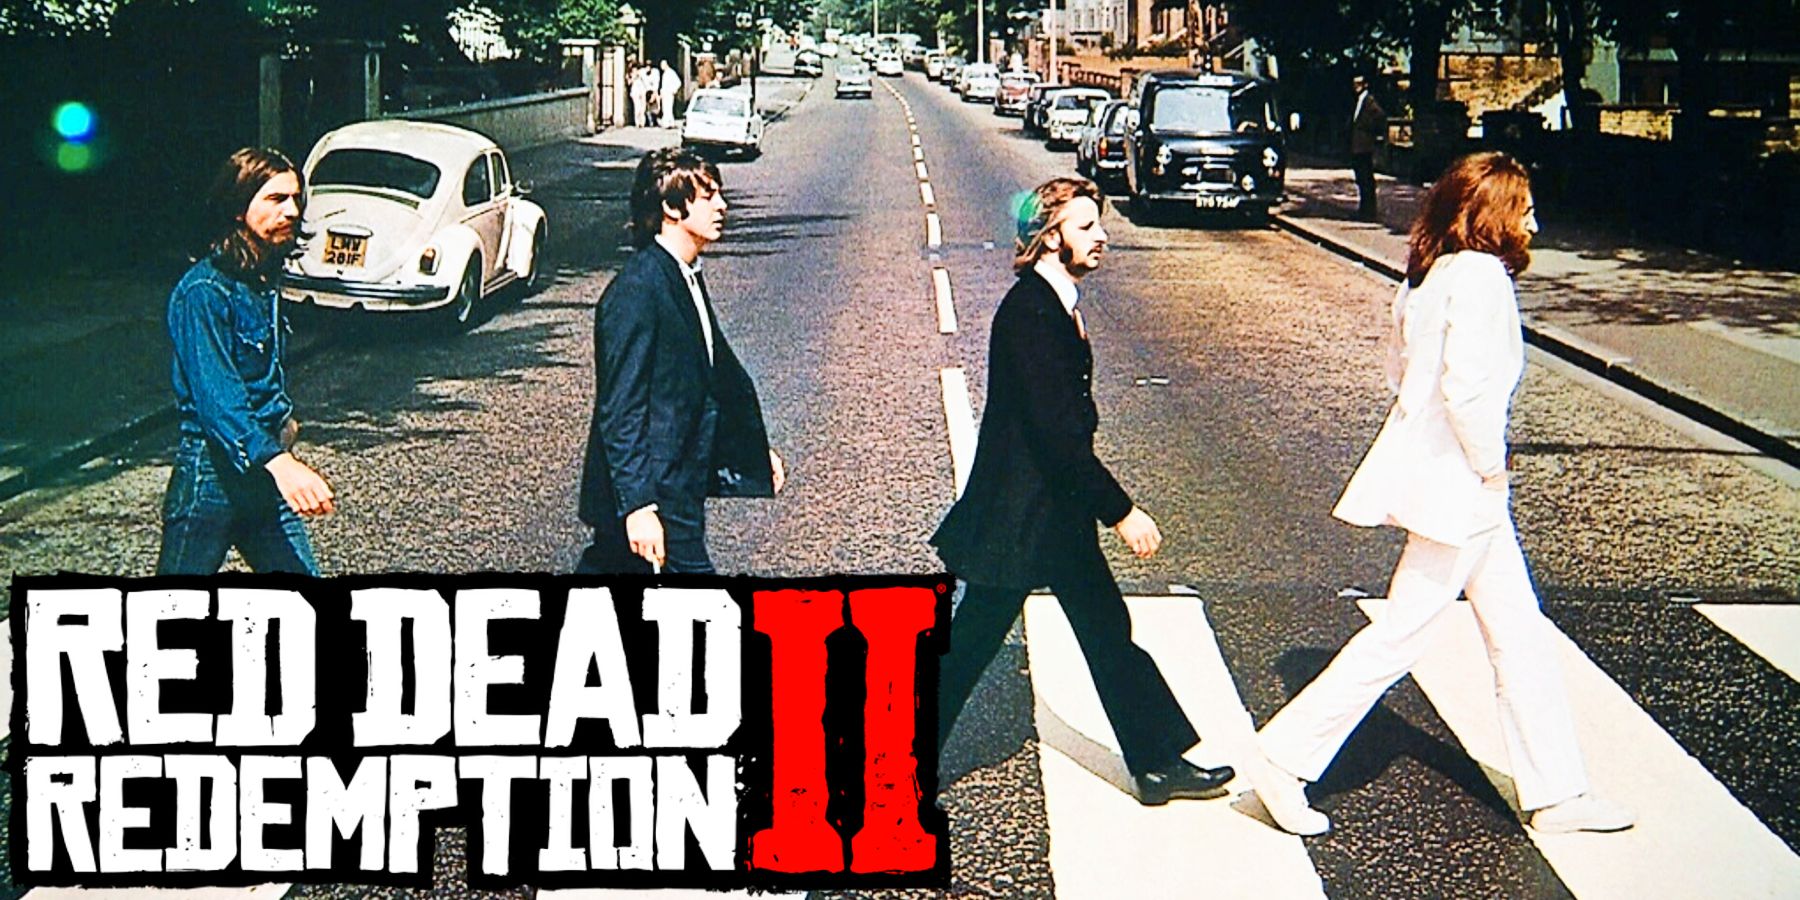 Red Dead Redemption 2-fan lyckas göra om det ikoniska Beatles albumomslaget i spelet